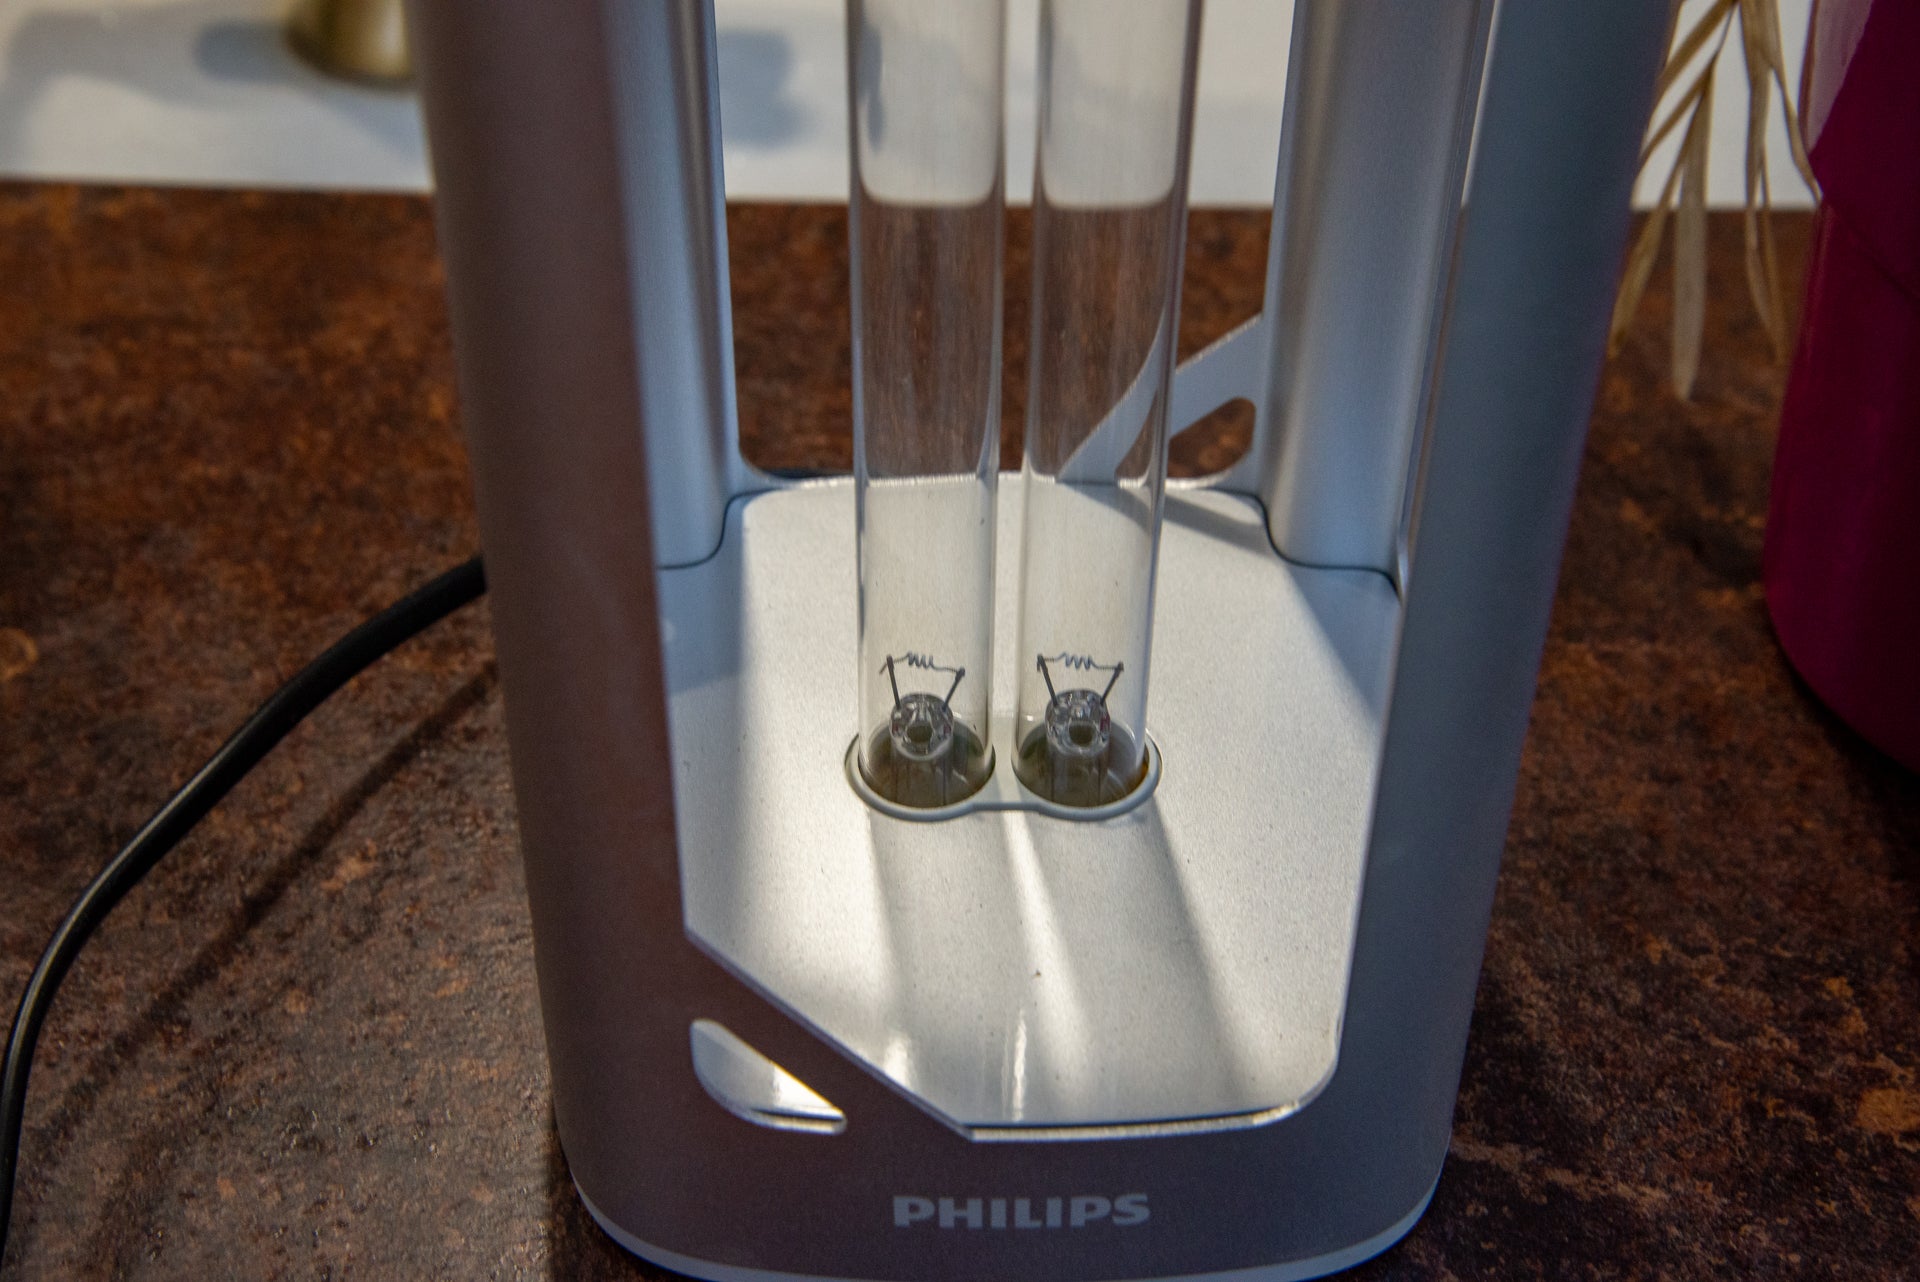 Philips UV-C Disinfection Desk Lamp lights